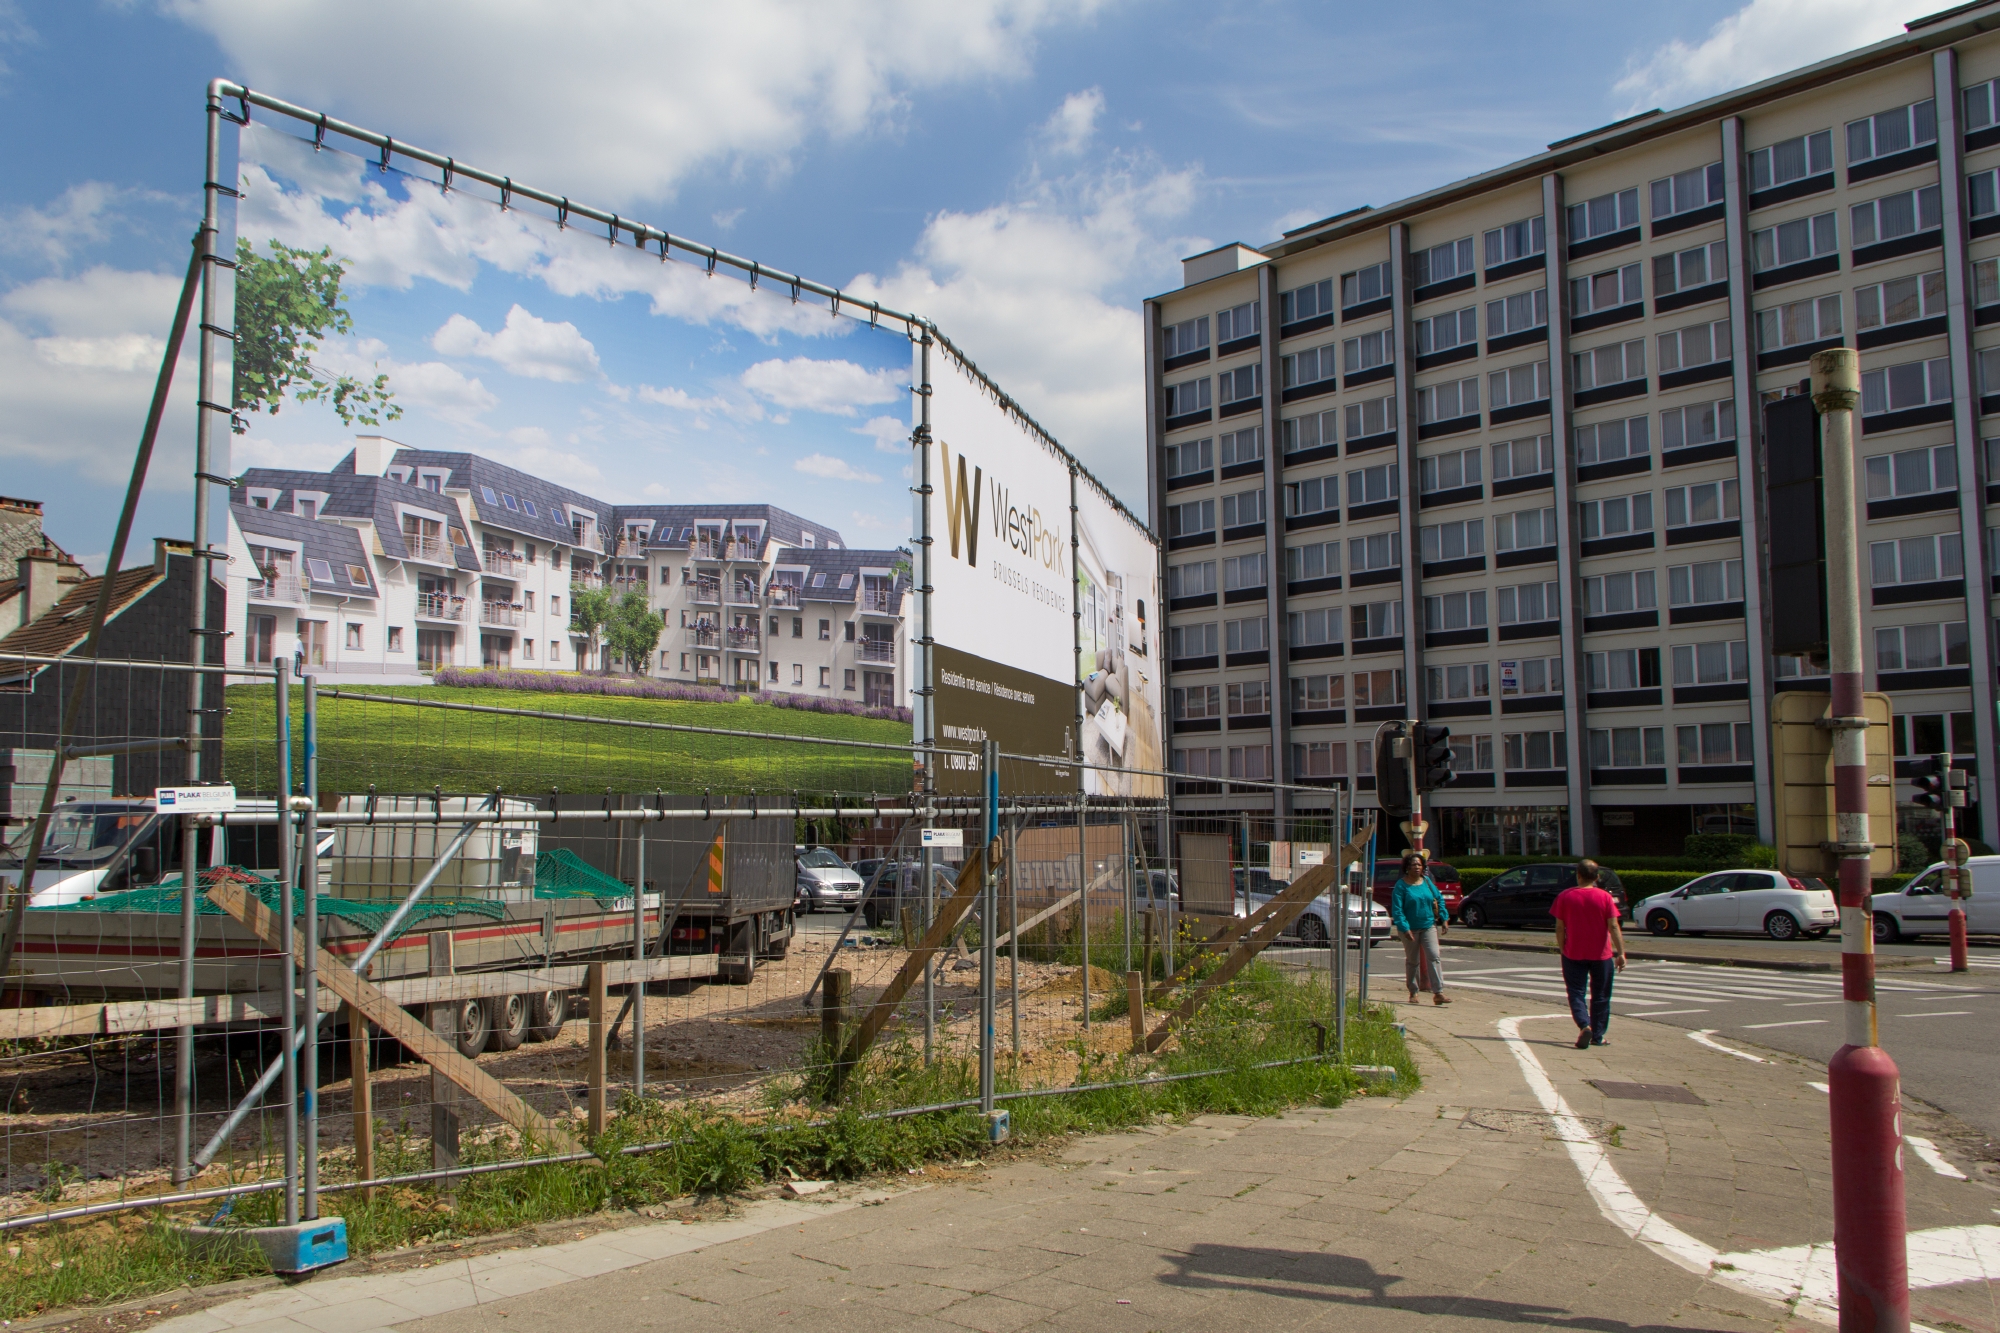 Westpark Brussel - Werfcommunicatie